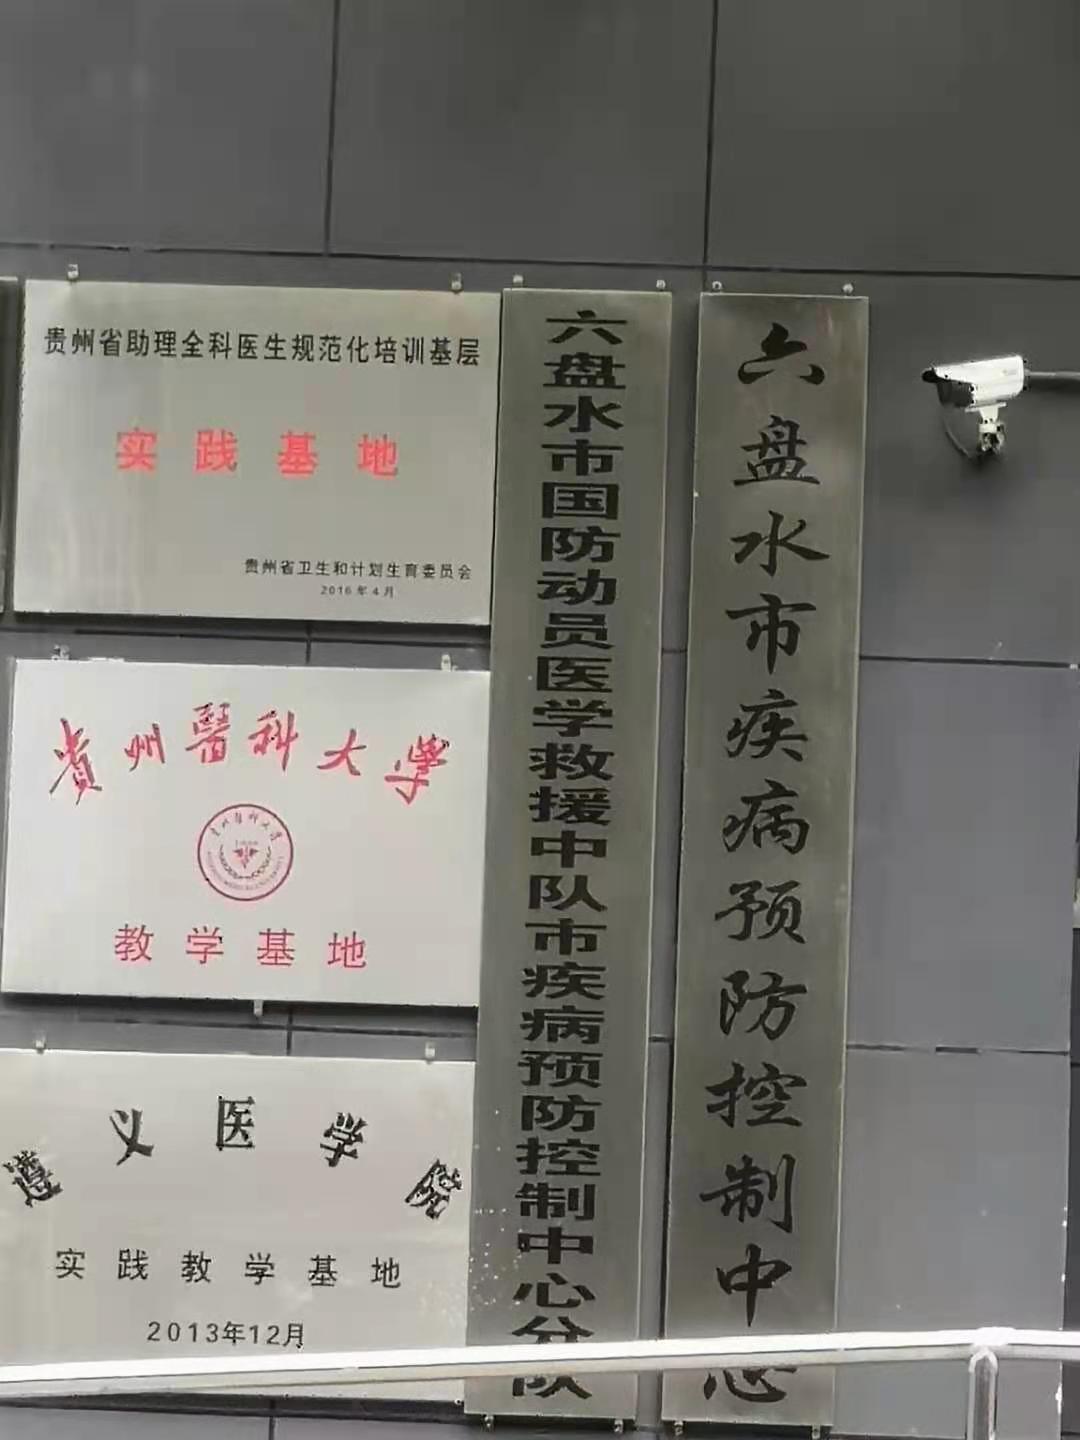 7月20日贵州疾控中心纯水机维护插图1